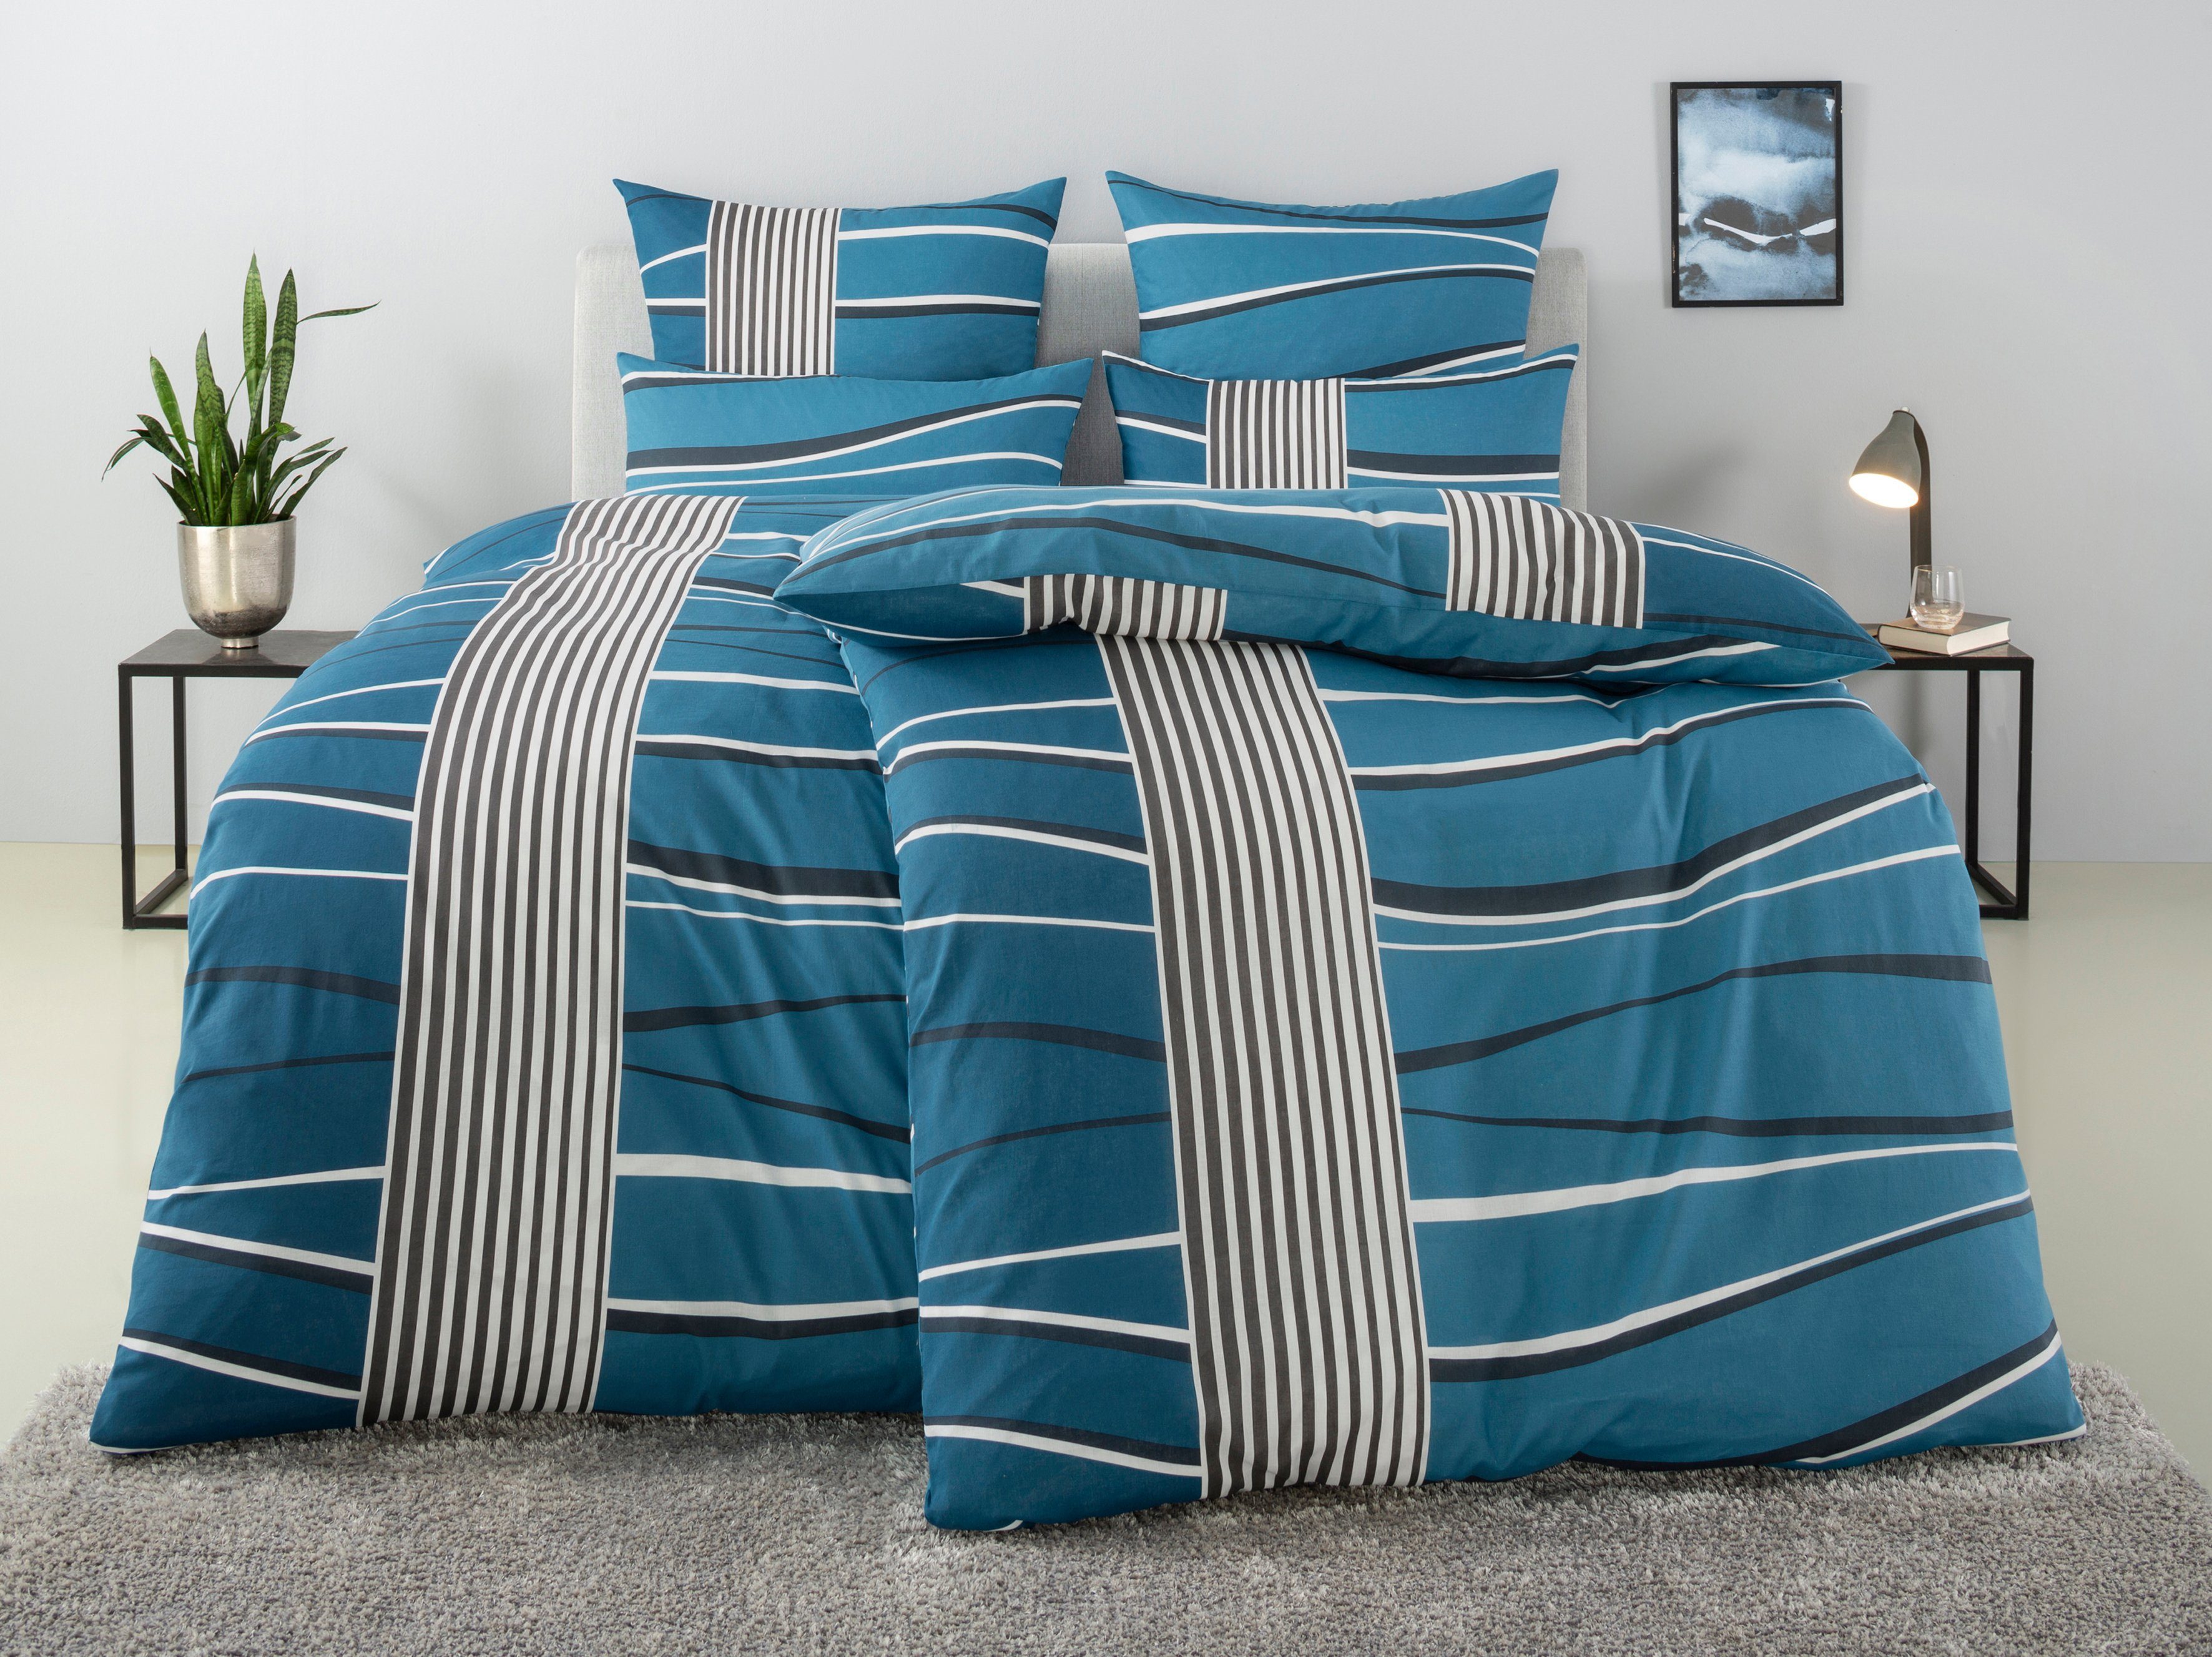 Bettwäsche Renu in Gr. 135x200 oder 155x220 cm, my home, Linon, 2 teilig, Bettwäsche aus Baumwolle, grafische Bettwäsche mit Wellen-Design blau